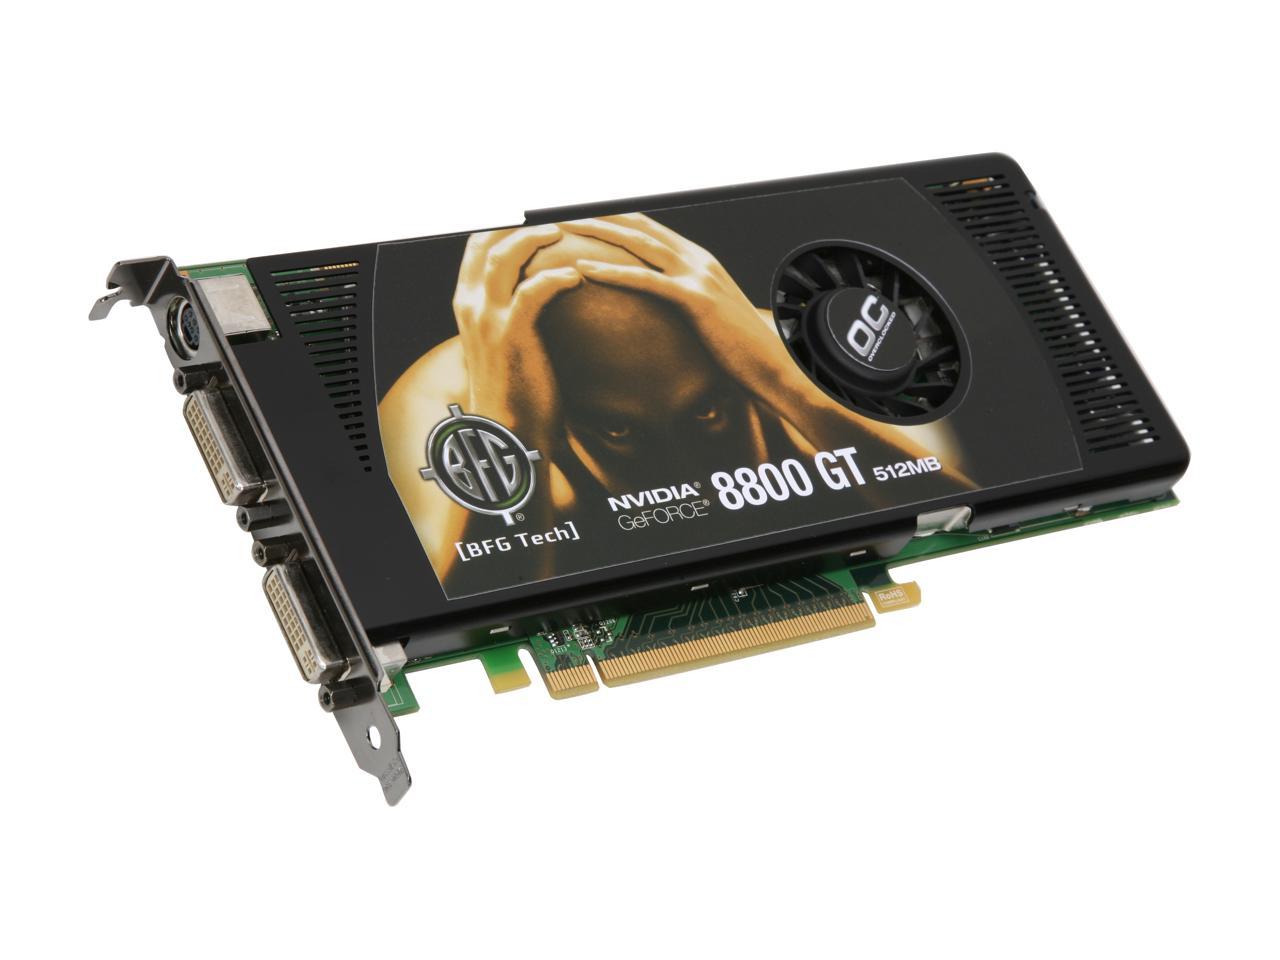 BFG Tech GeForce 8800 GT Video Card BFGE88512GTOCE - Newegg.com